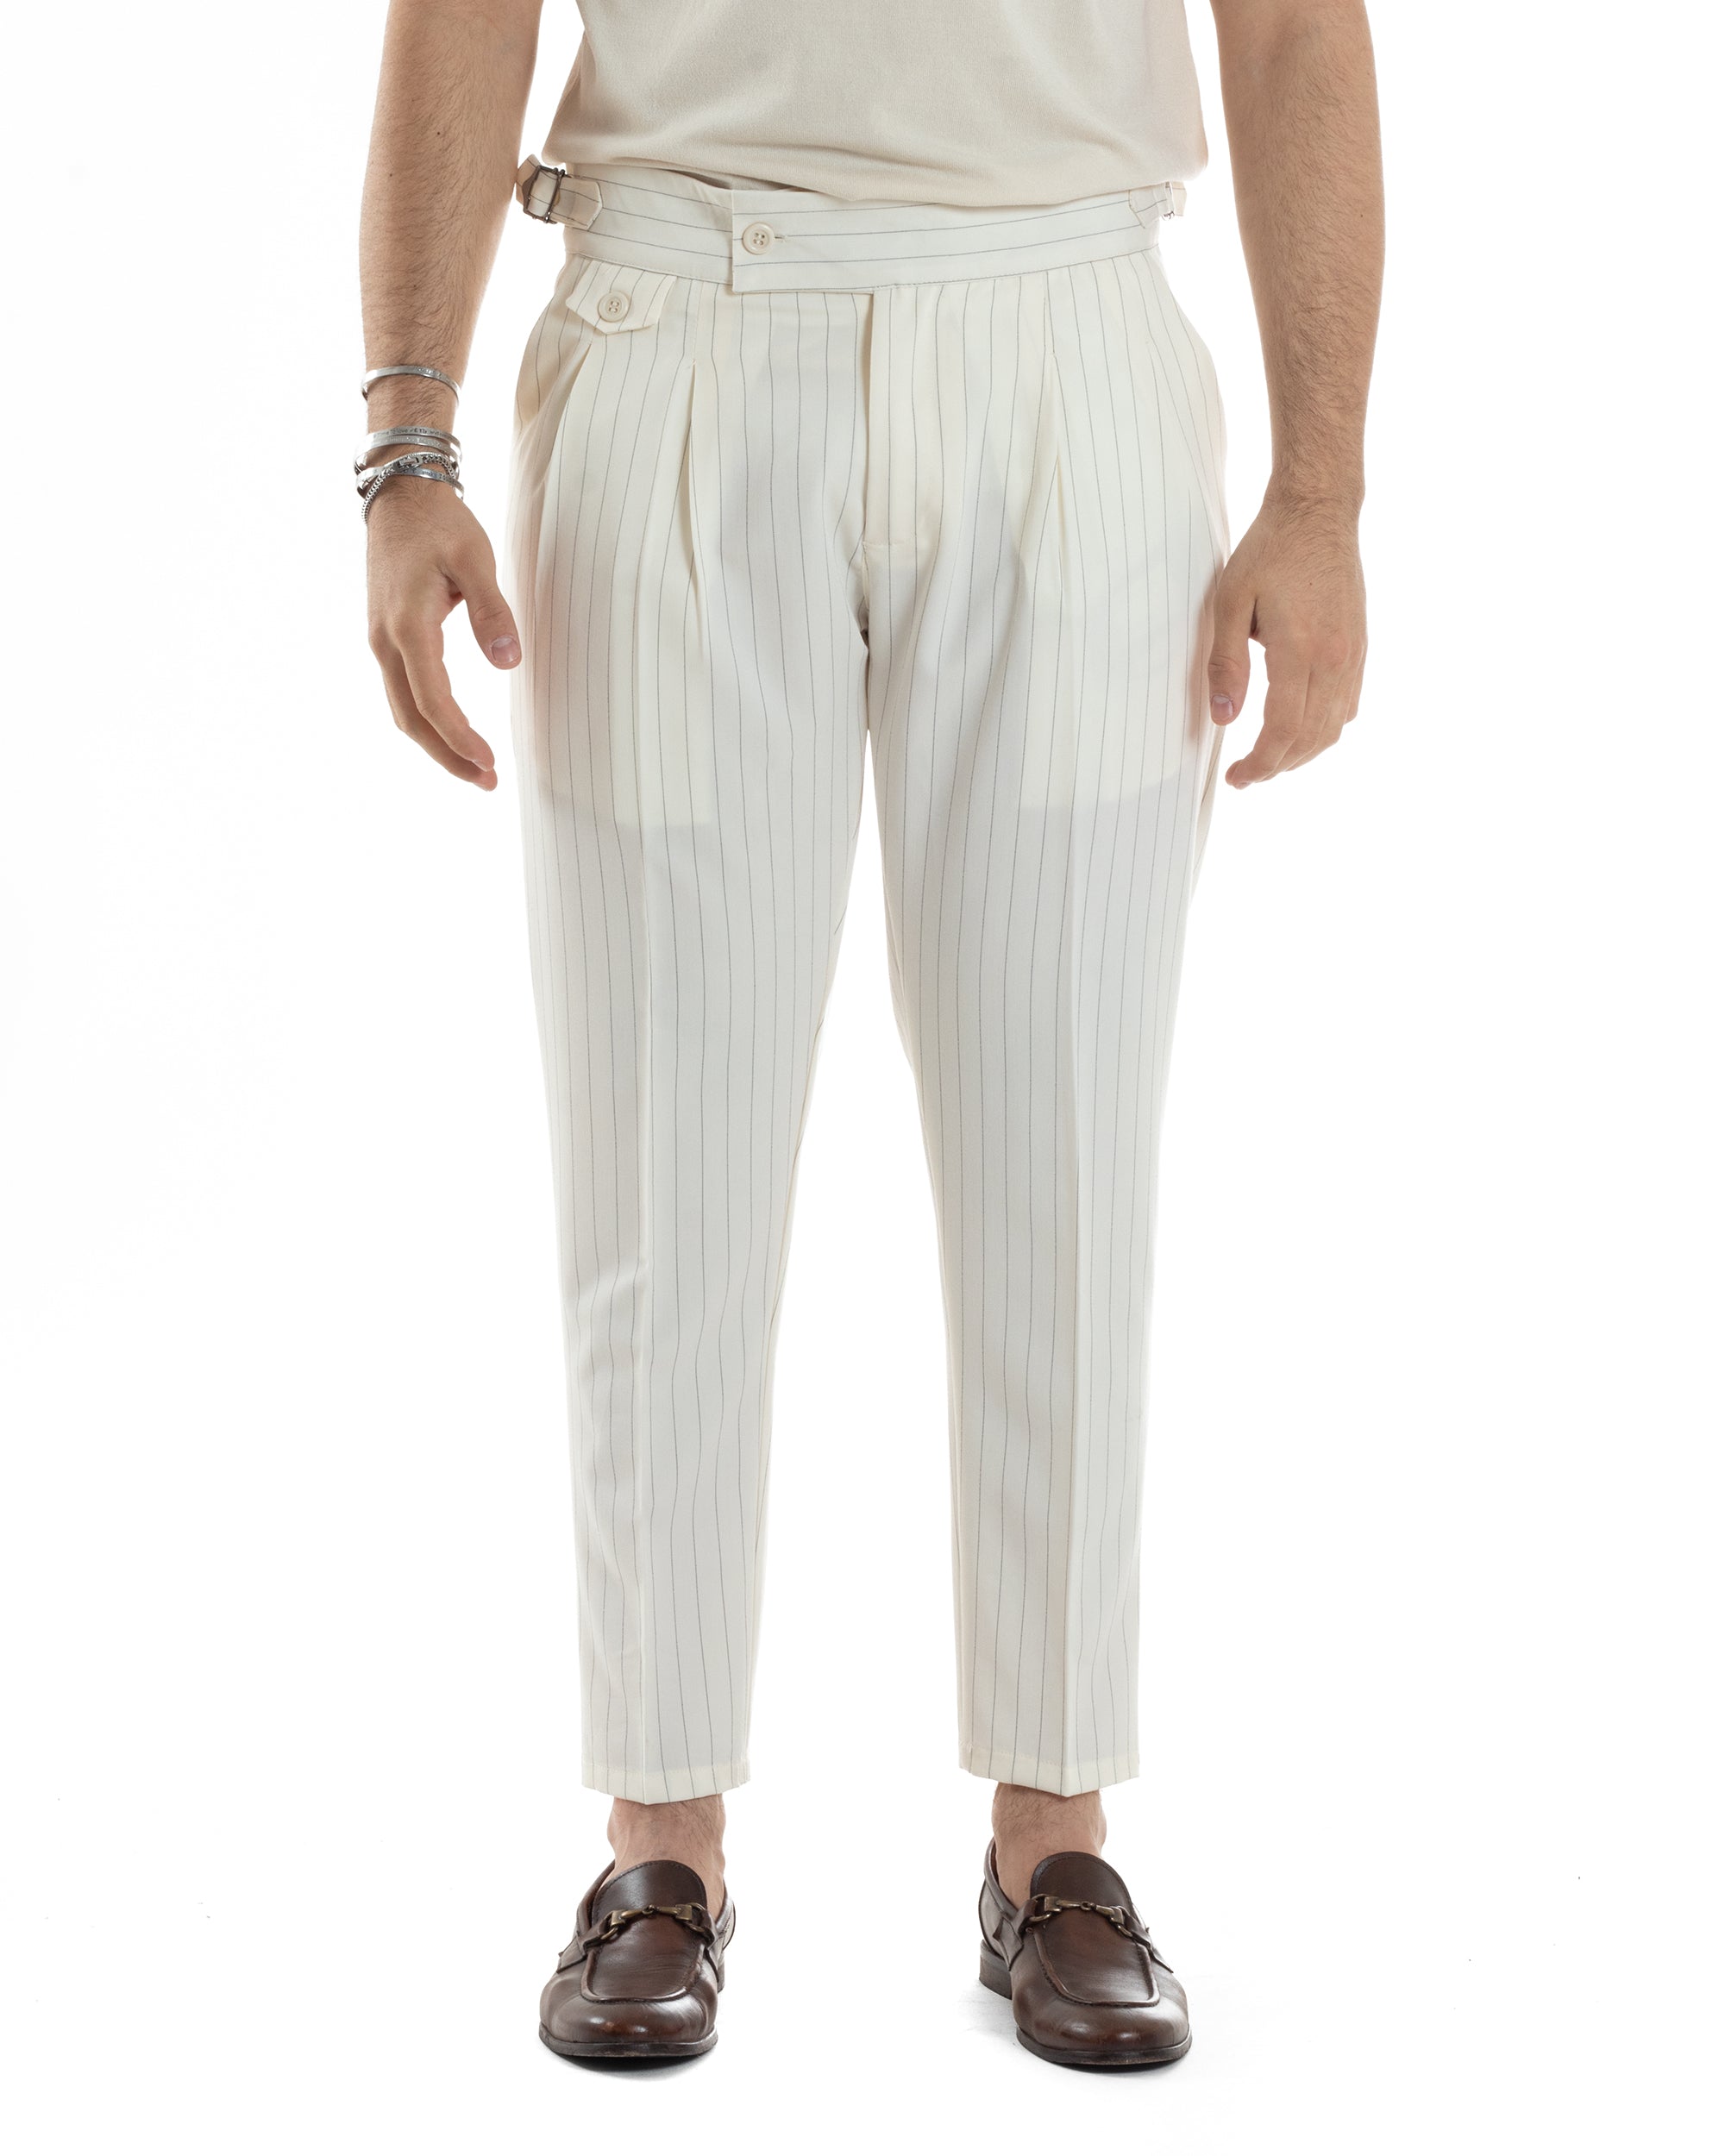 Pantaloni Uomo Classico Gessato Rigato Vita Alta Pinces Abbottonatura Allungata Fibbia Casual Bianco GIOSAL-P6085A